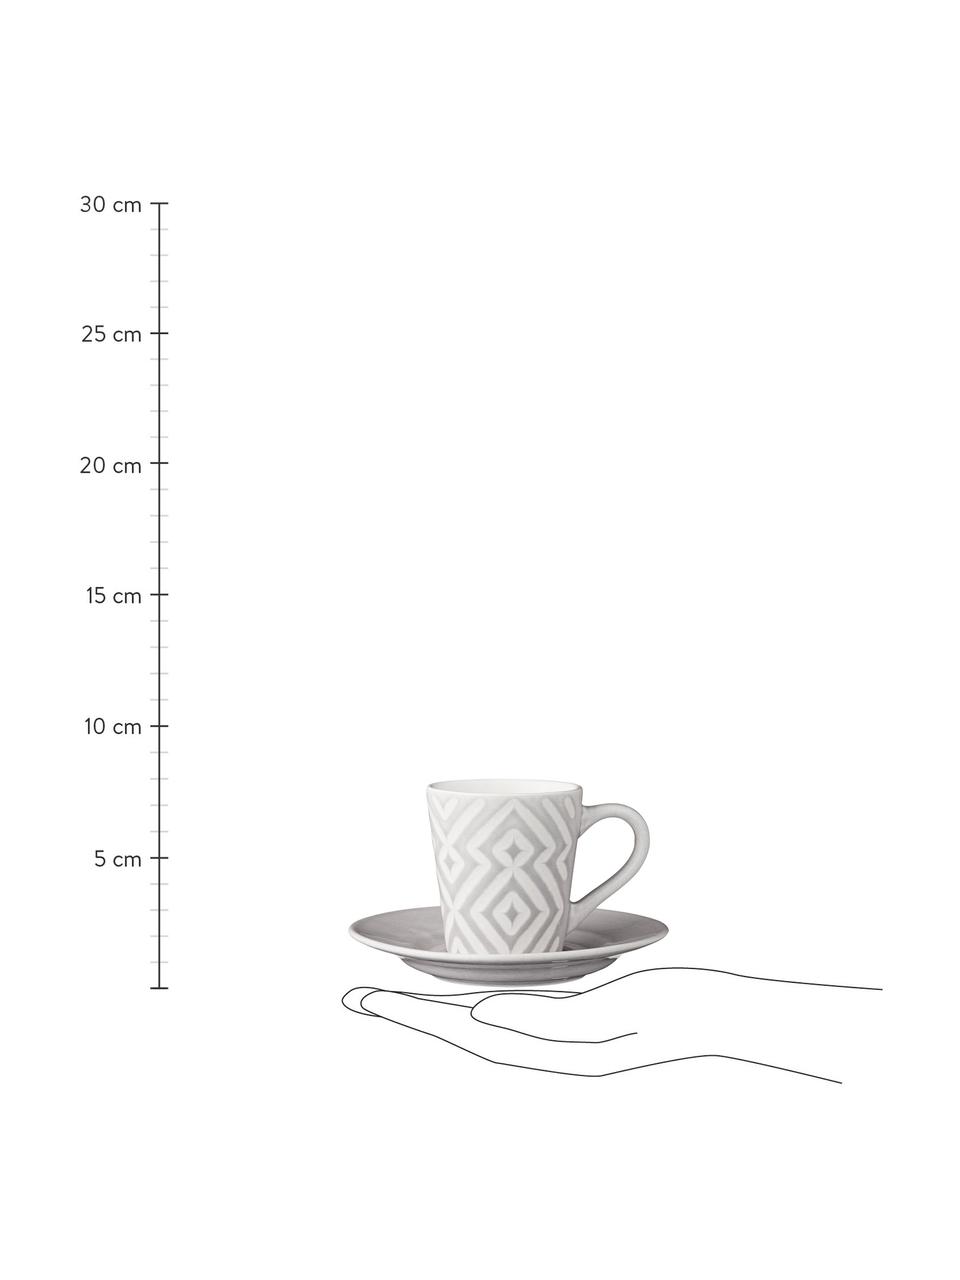 Espresso kopjes Abella met schoteltjes in grijs/wit met structuurpatroon, 4 stuks, Keramiek, Grijs, wit, Ø 12 x H 7 cm